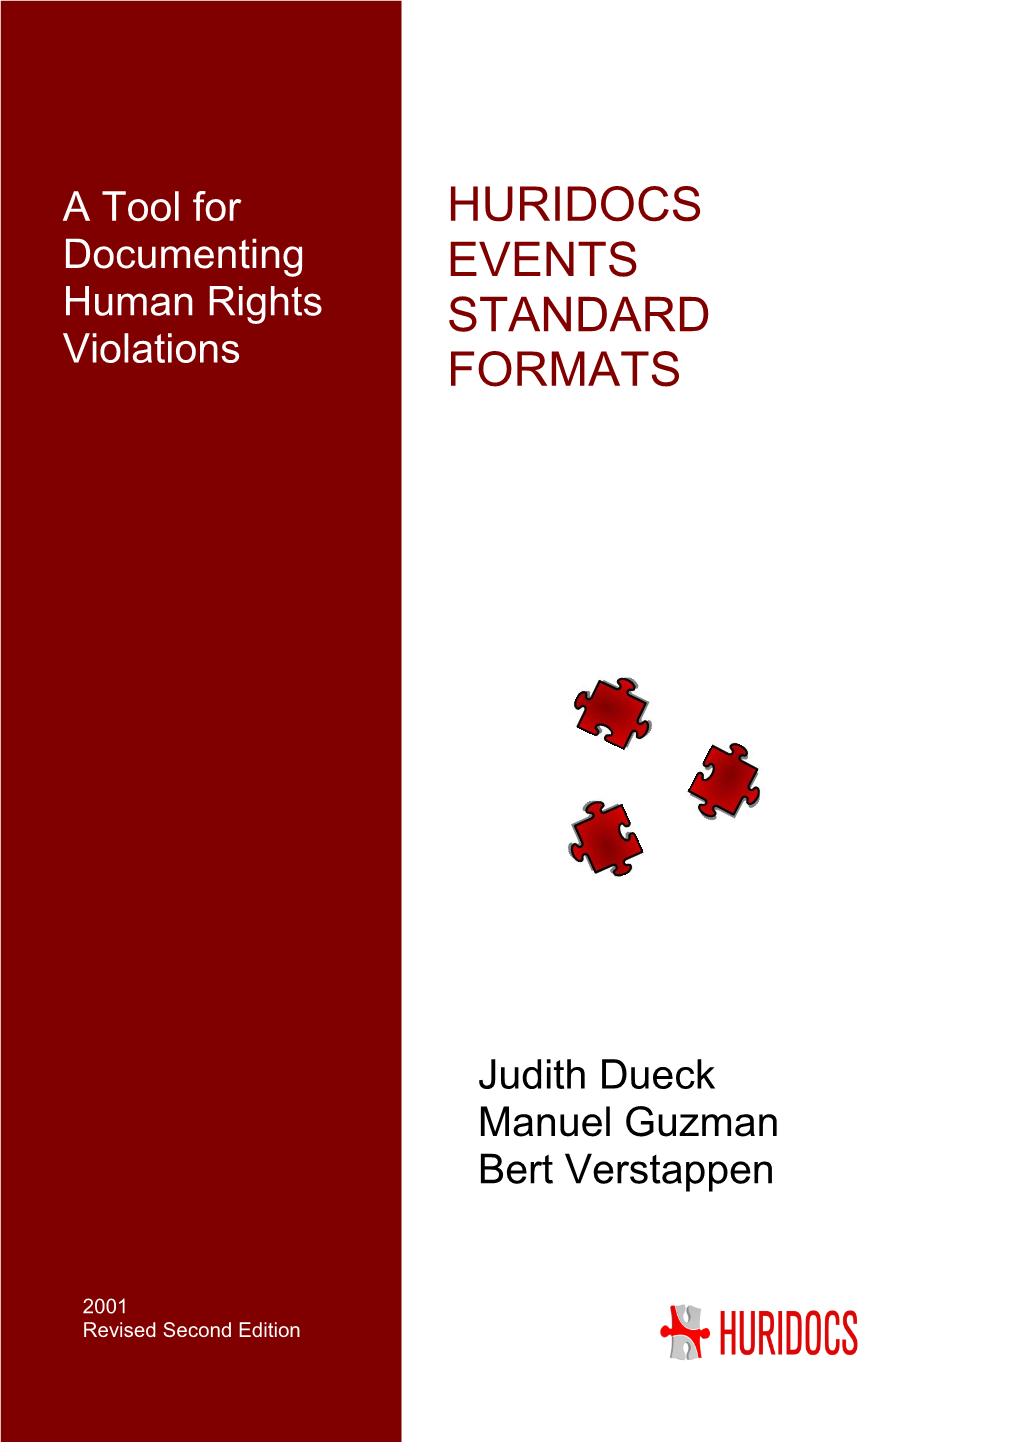 Huridocs Events Standard Formats